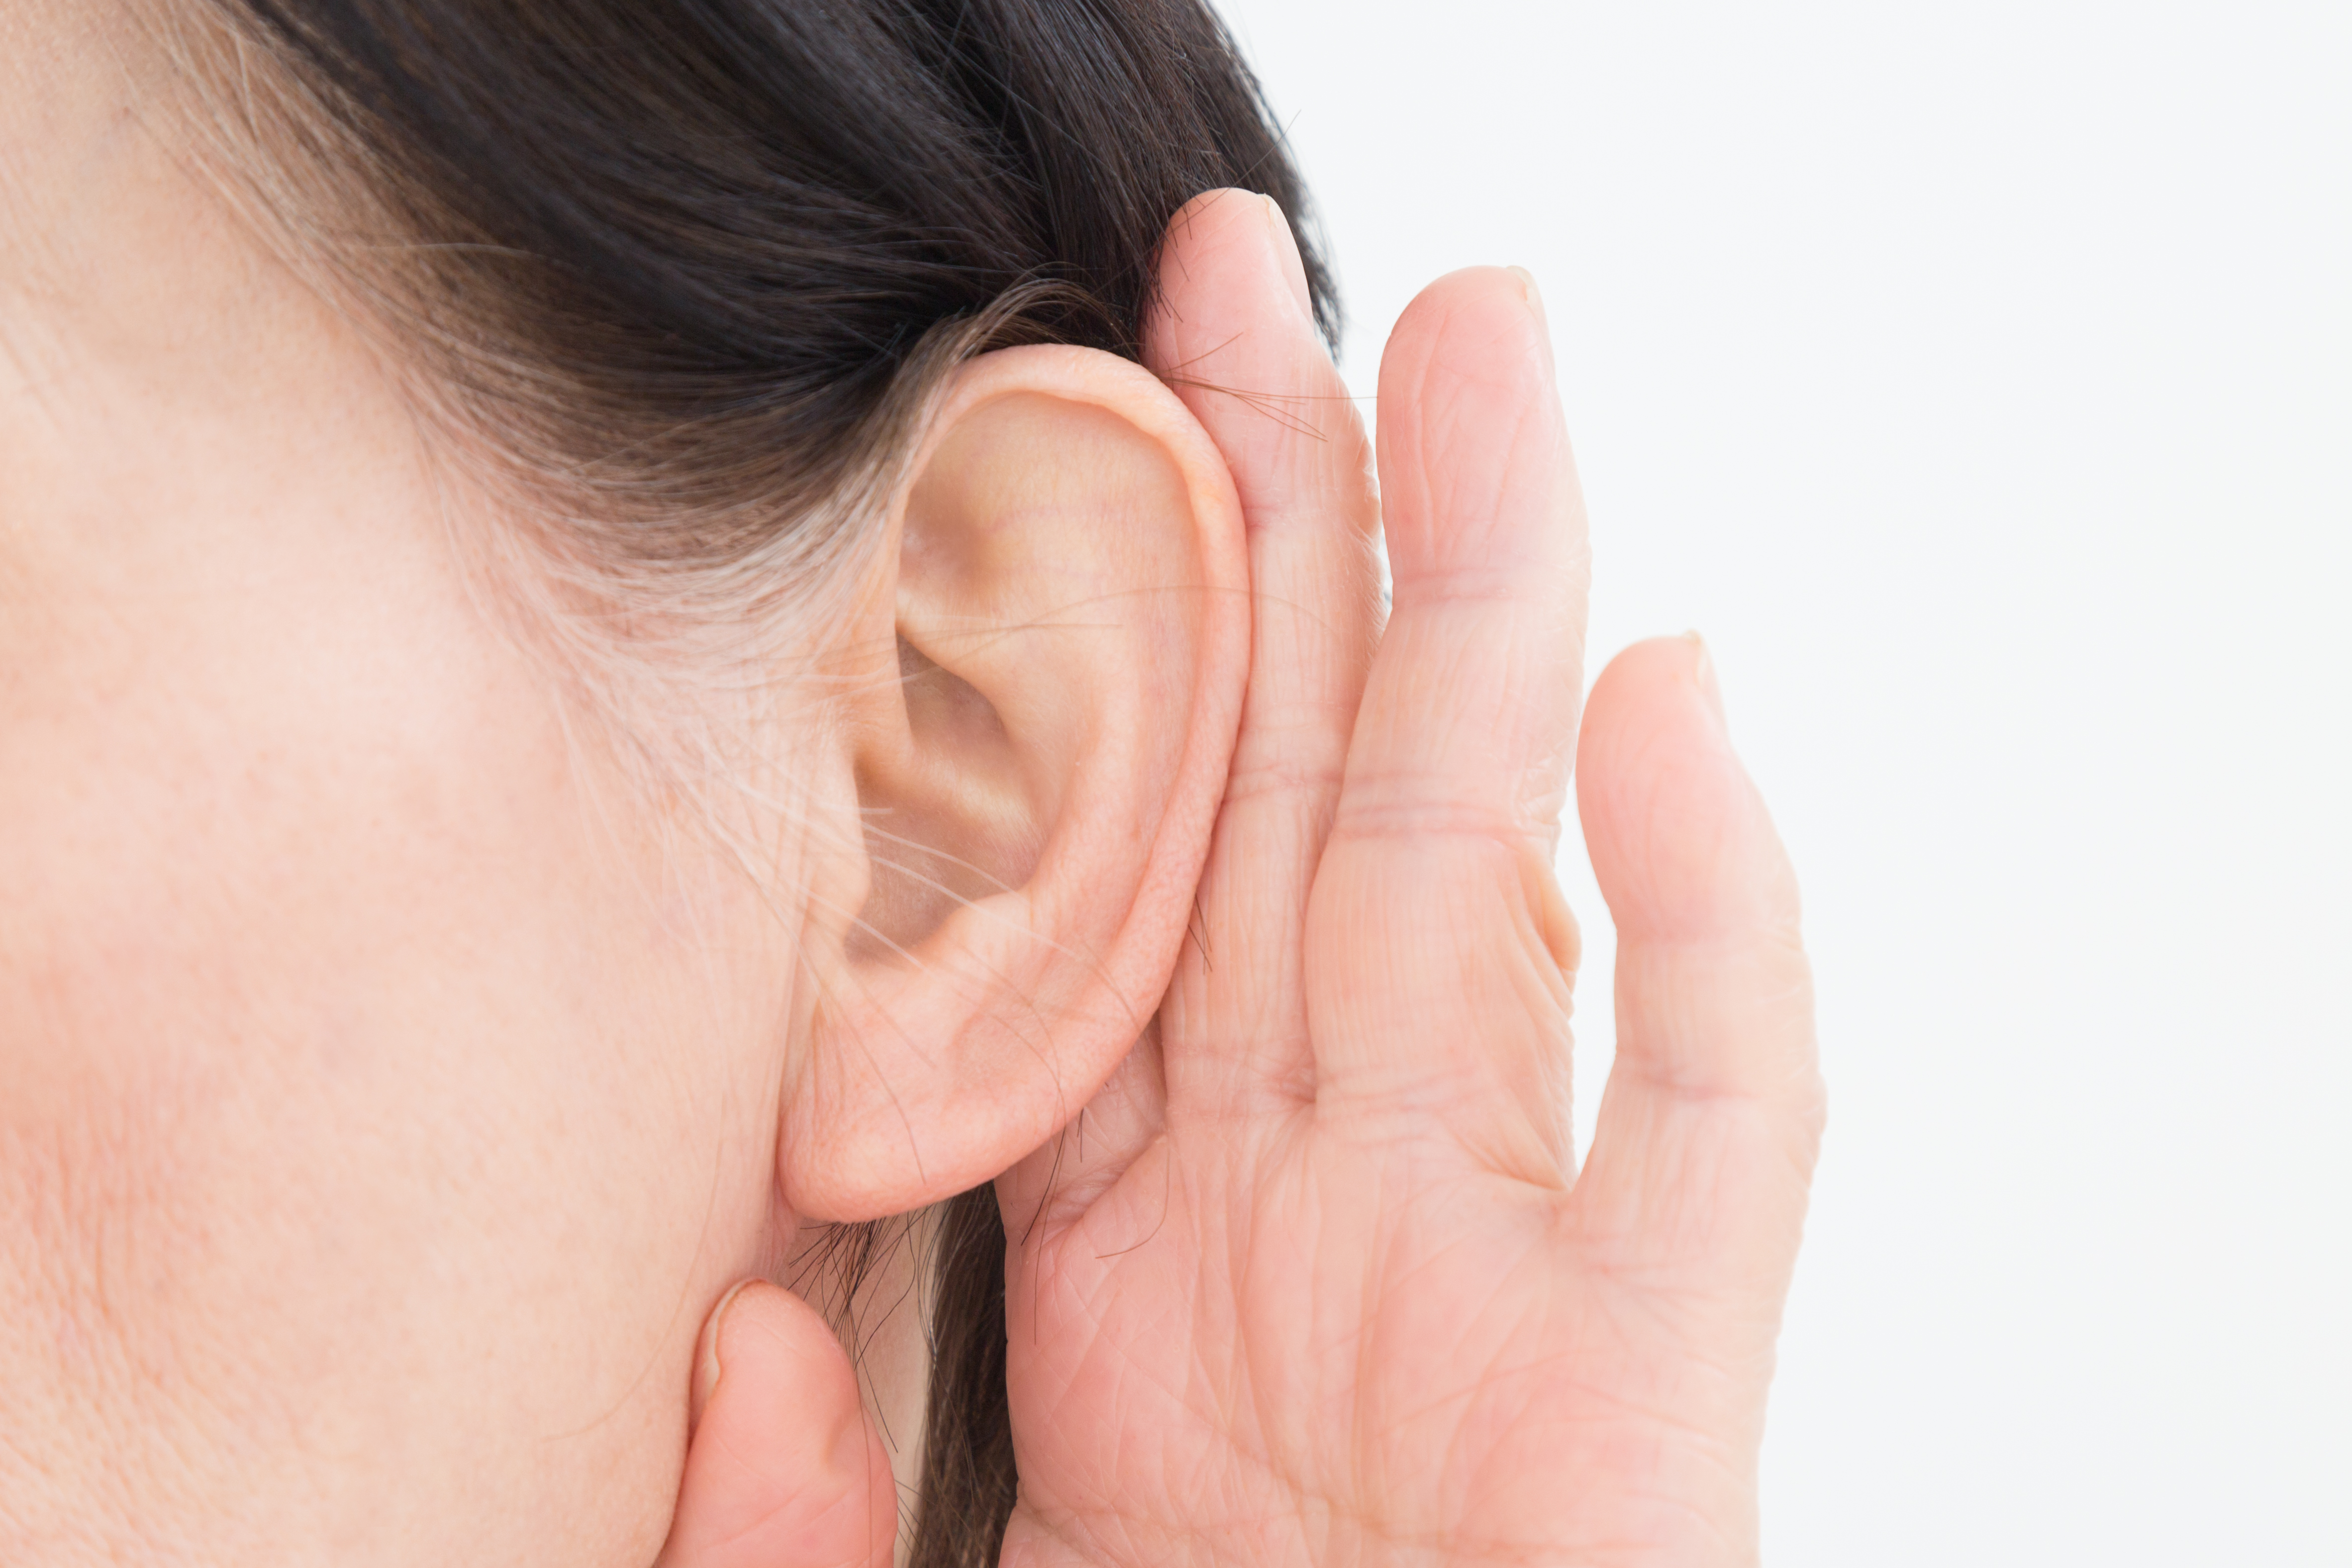 難聴も認知症の要因に。聴力低下の改善は脳の活動にとって大切！